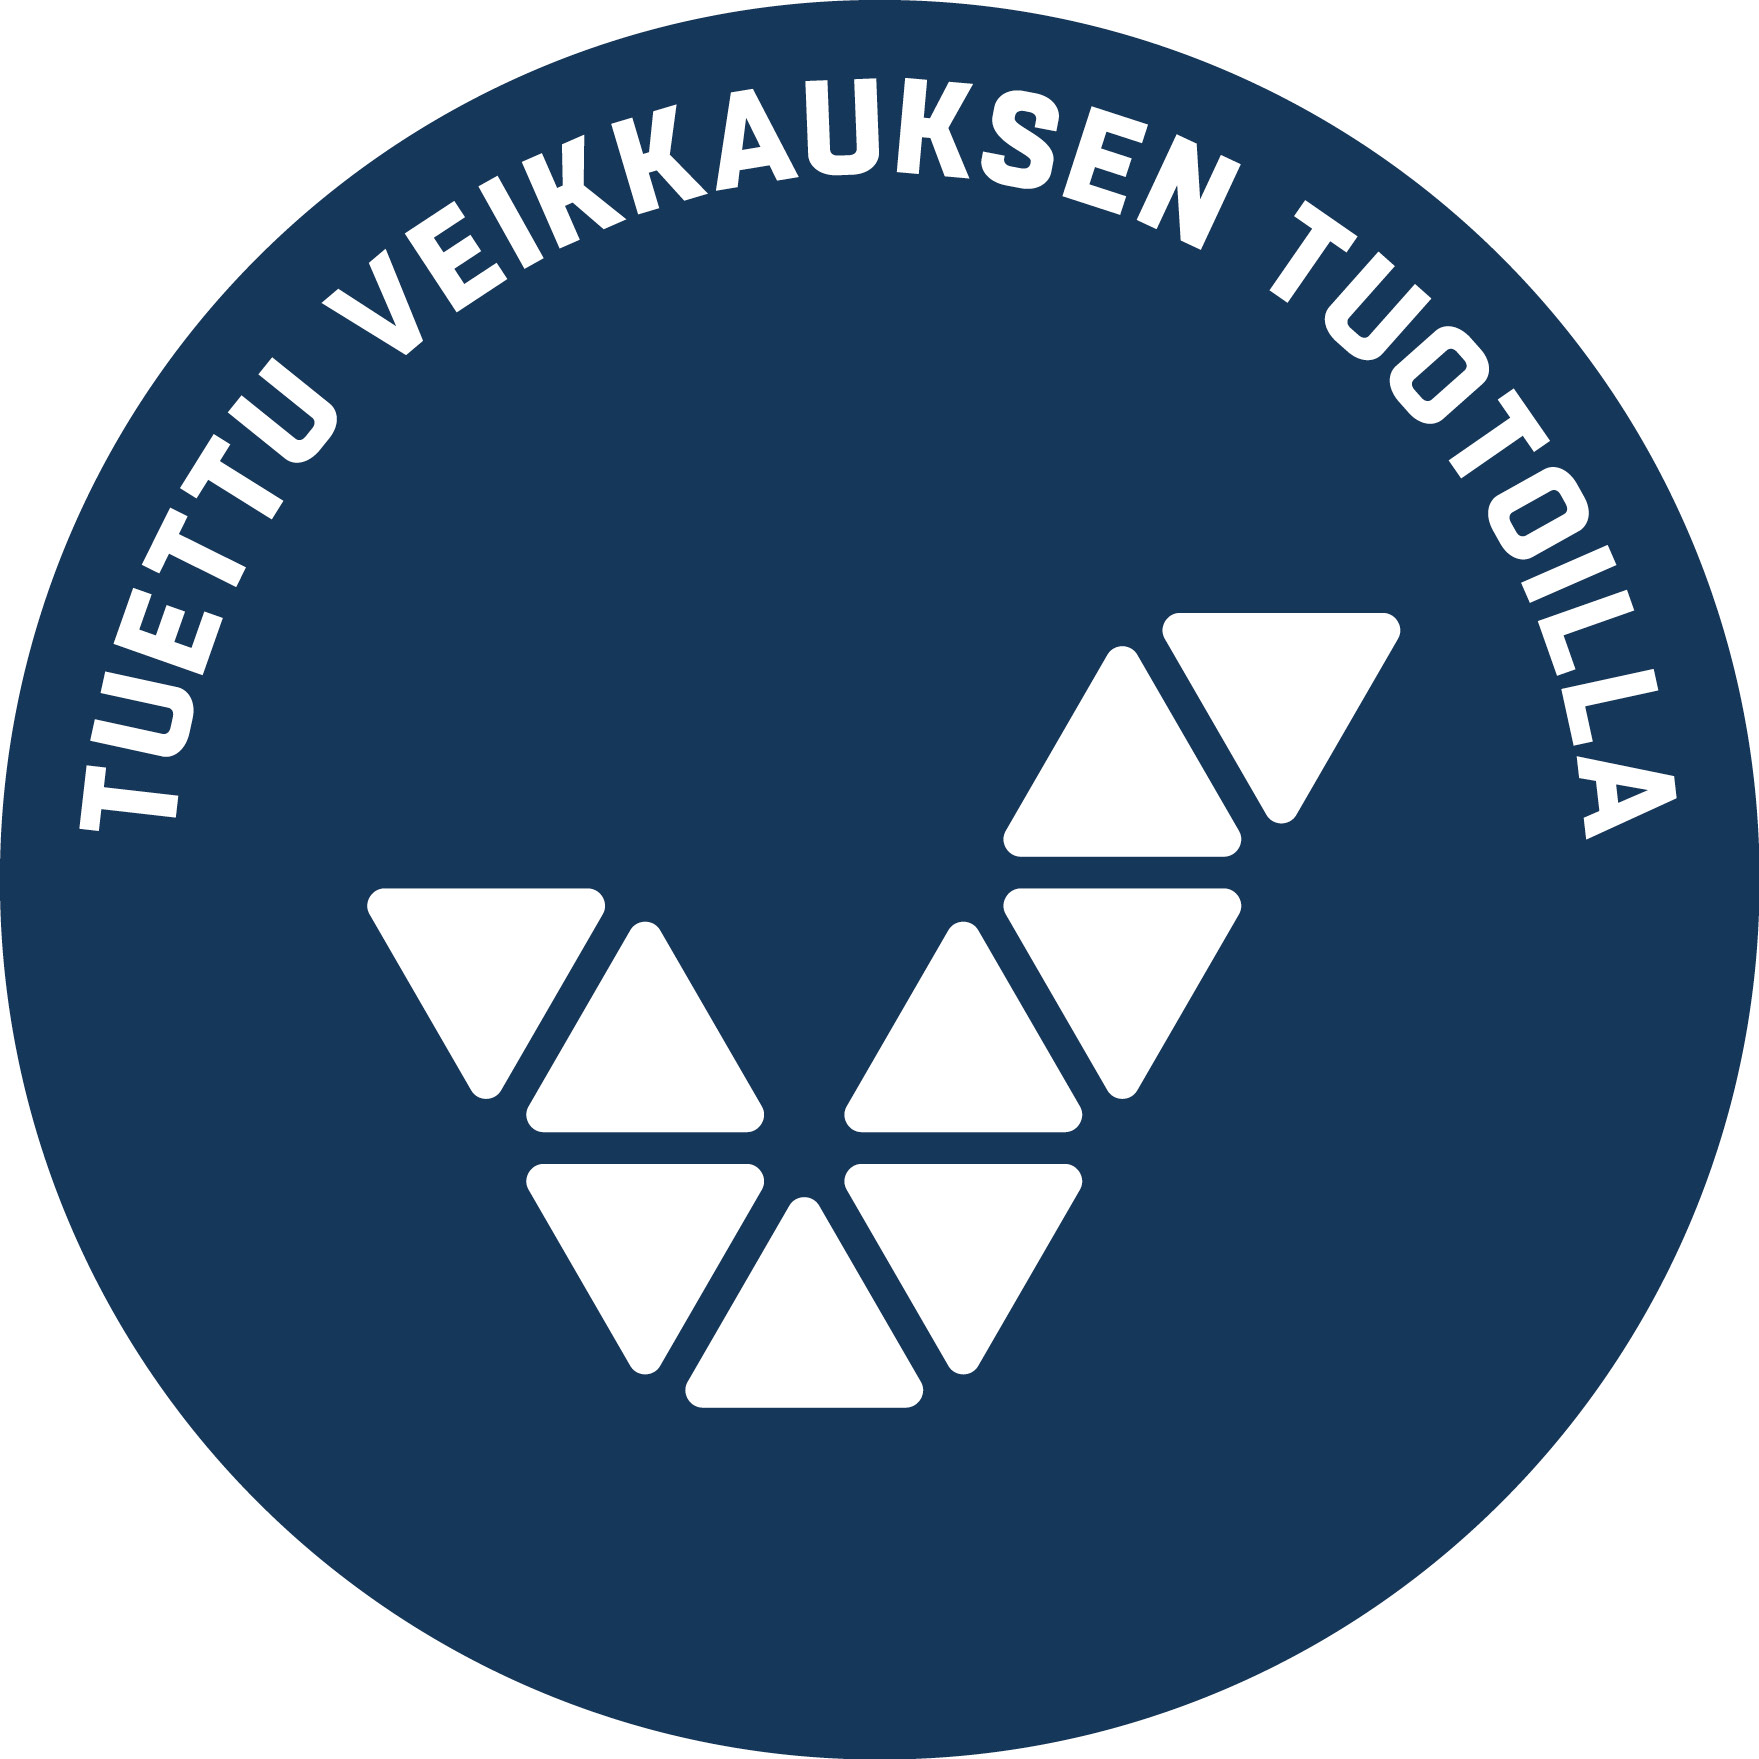 Tuettu Veikkauksen tuotoilla -logo.